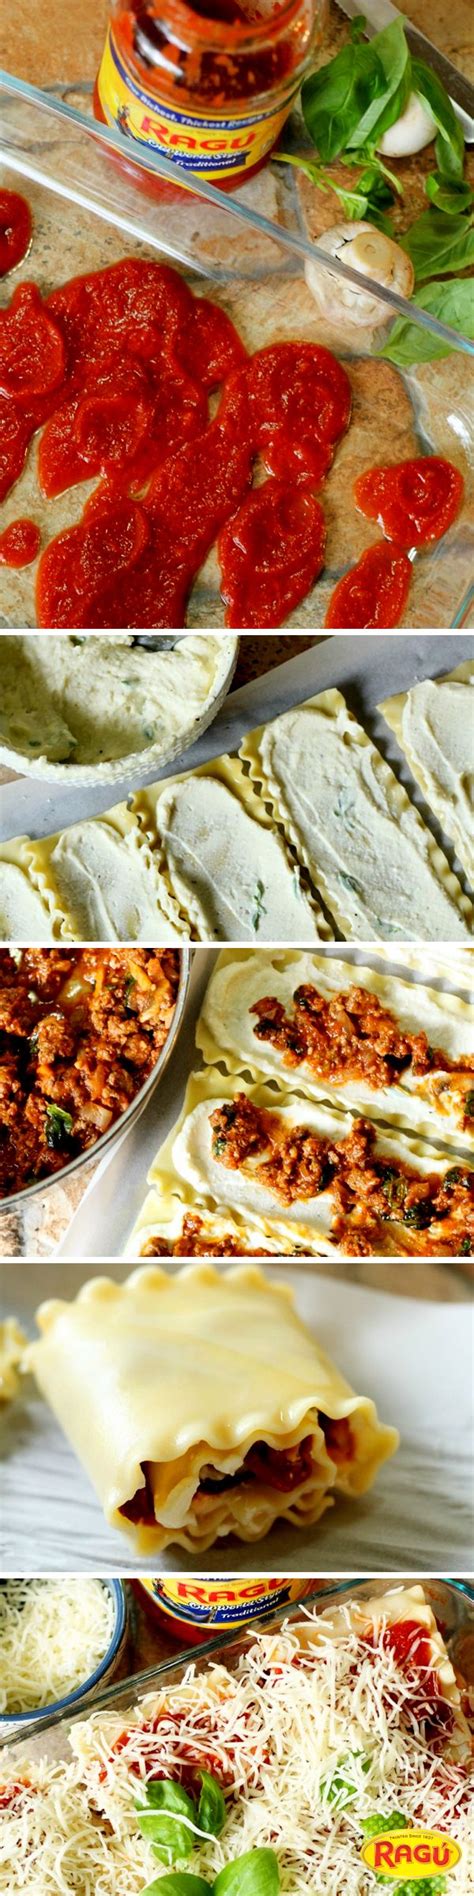 Easiest Ever Lasagna Roll Up Recipe Recipe Recipes Lasagna Rollups